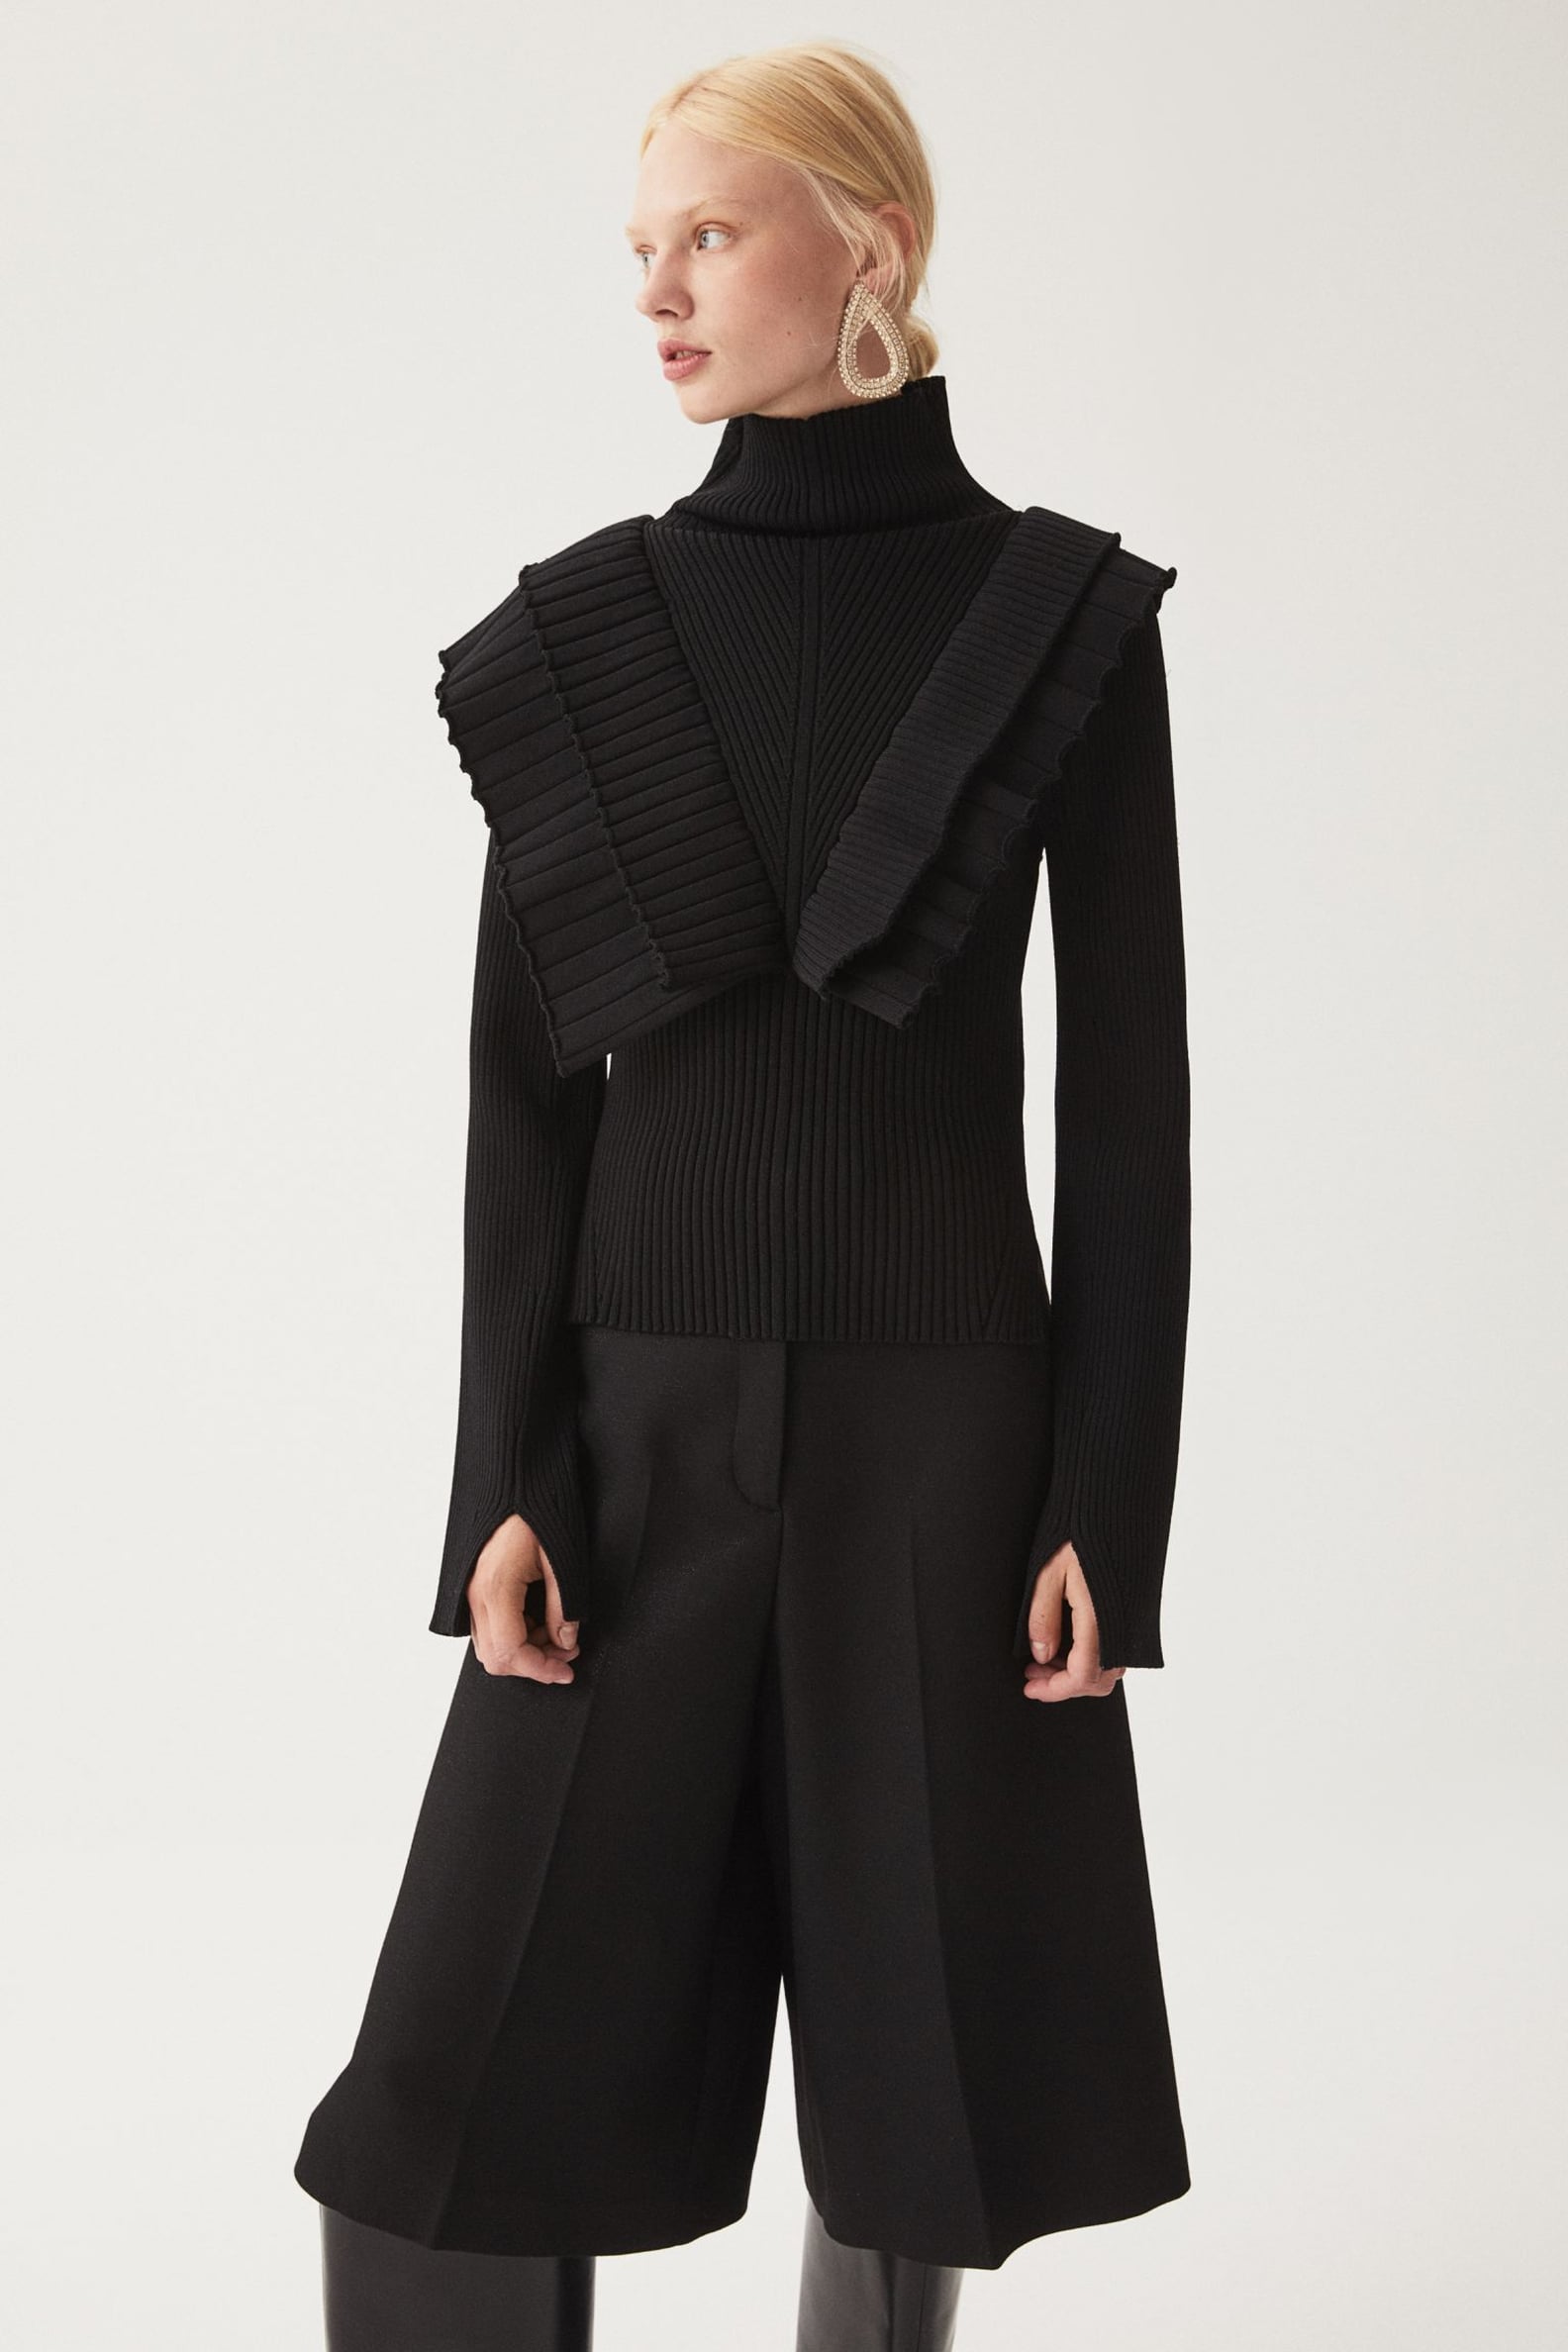 H&M Studio Collection Fall 2020 | POPSUGAR Fashion